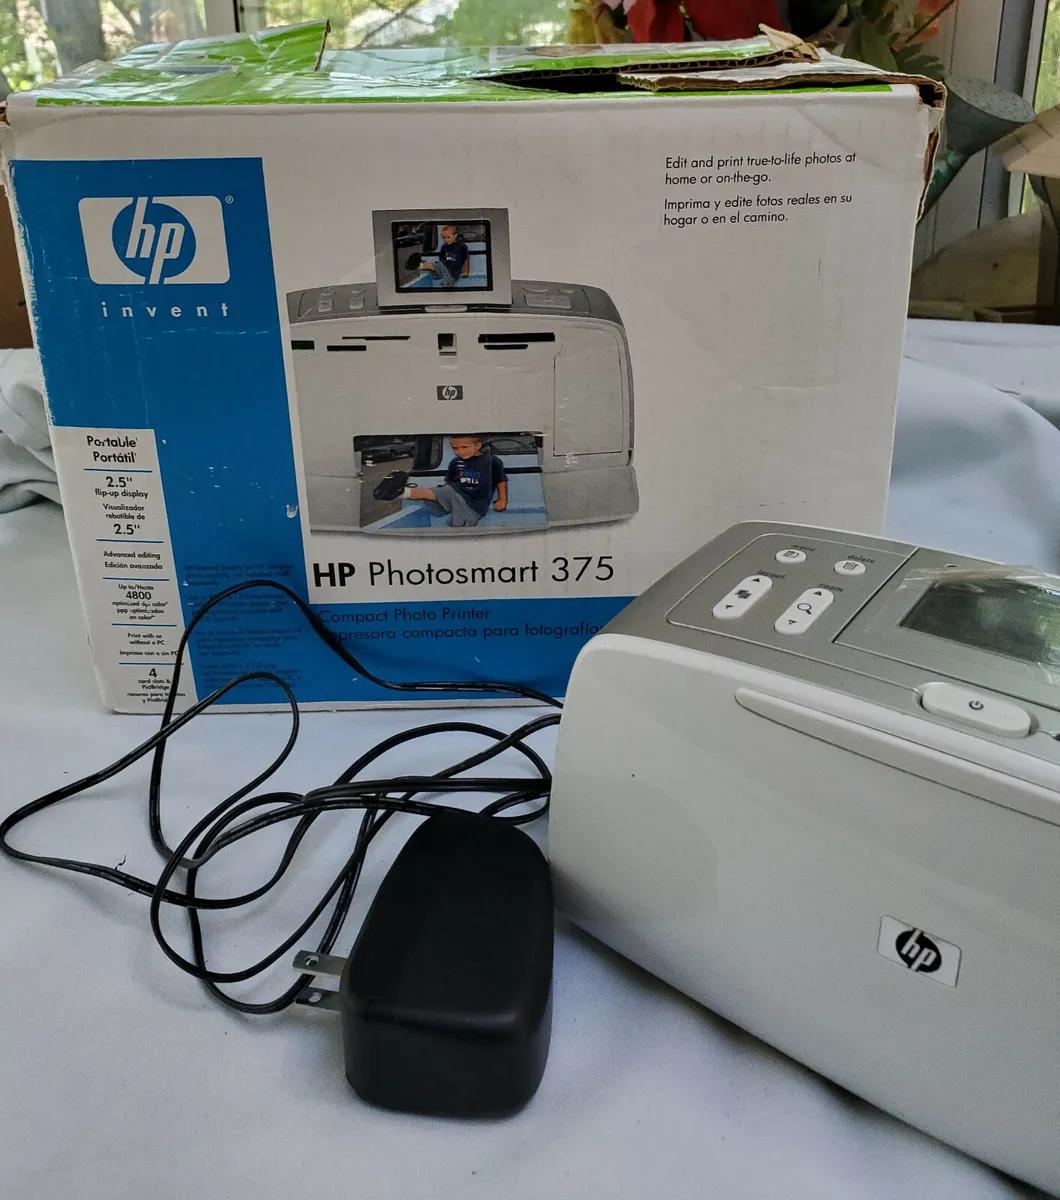 hewlett packard photosmart 375 - What does a Photosmart printer do